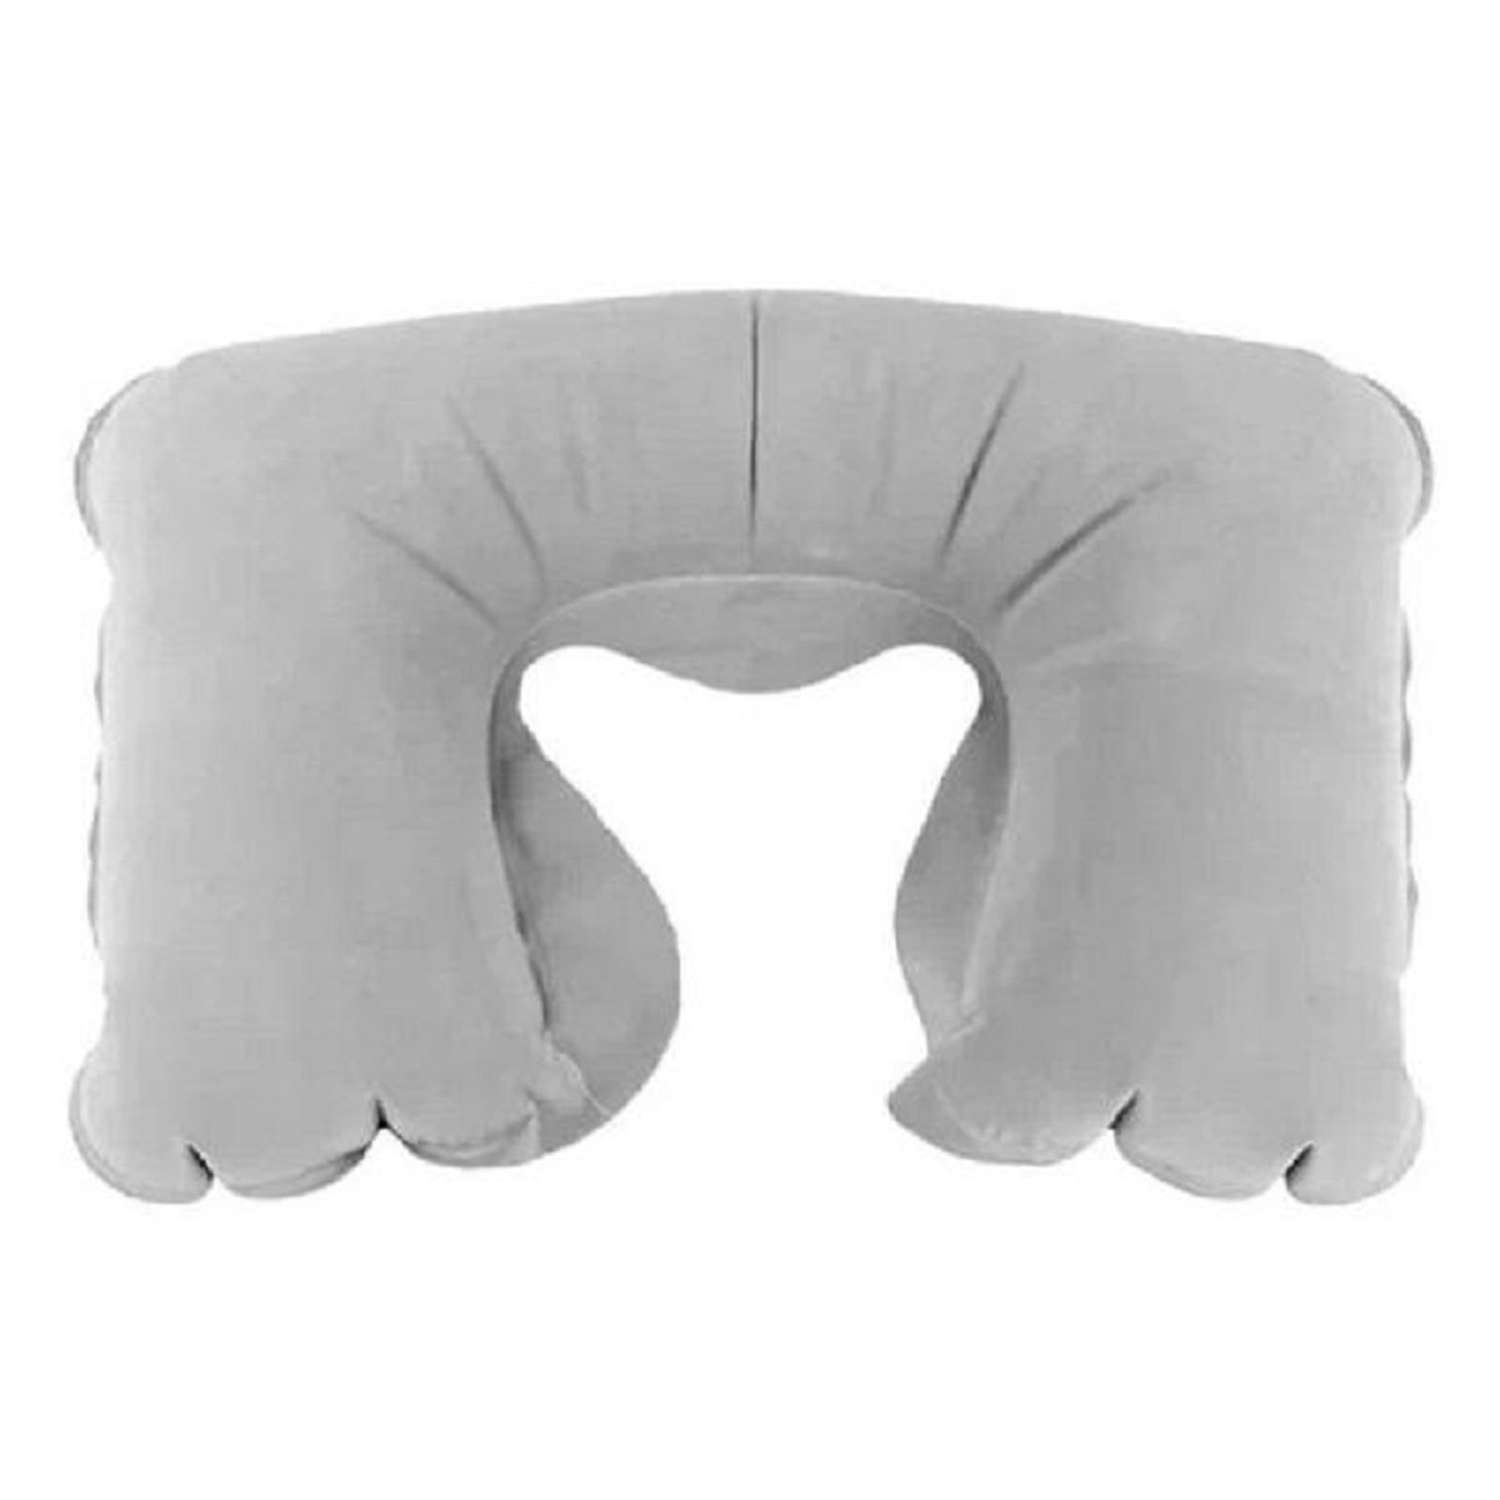 Подушка надувная ZDK Homium Travel Comfort дорожная цвет серый - фото 1